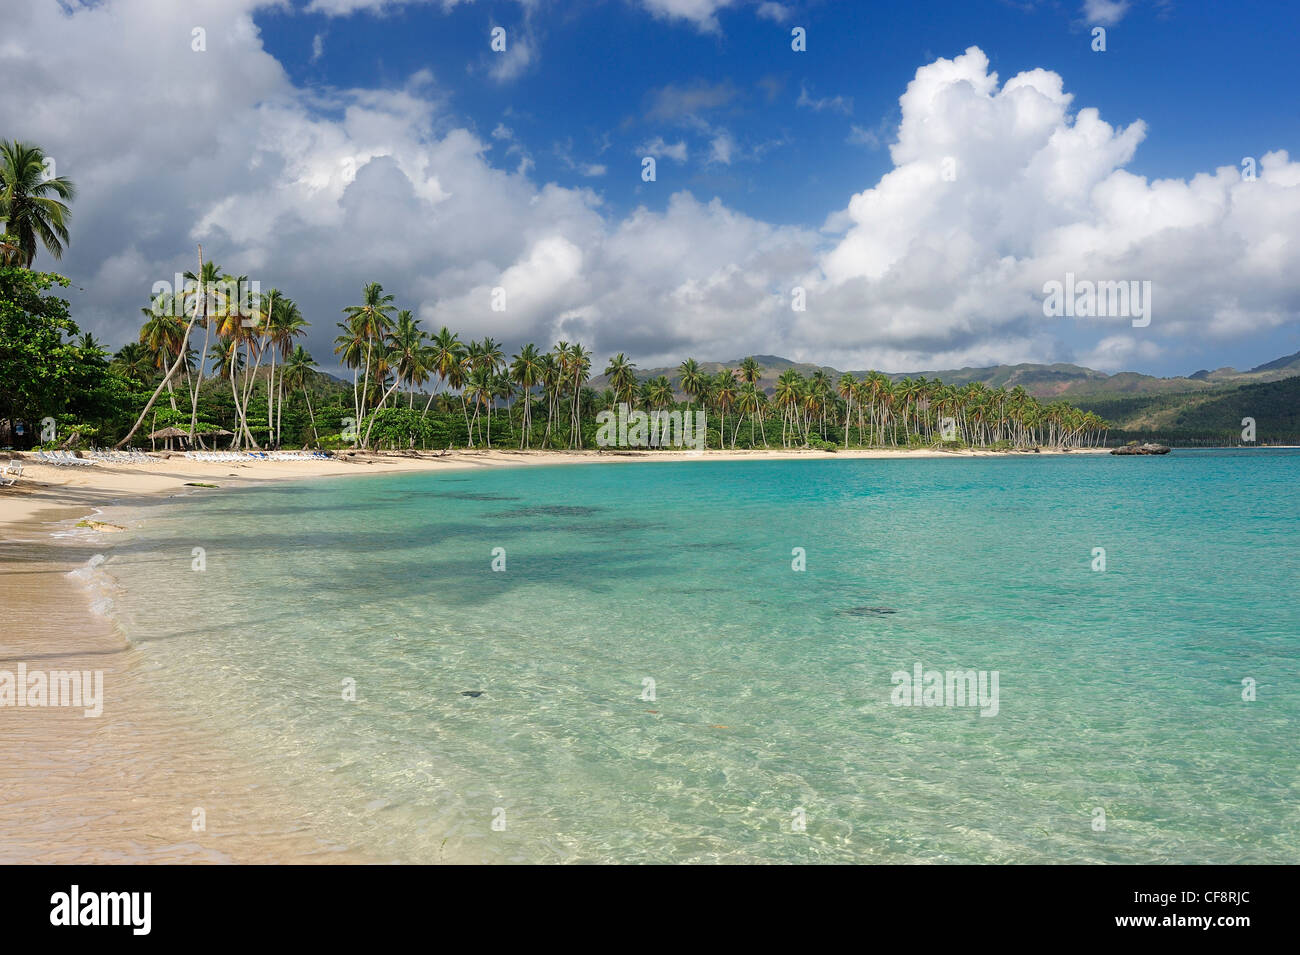 Palmiers, Playa Rincon, Las Galeras, Samana, République dominicaine, Caraïbes, plage, côte, voyages, vacances, Banque D'Images